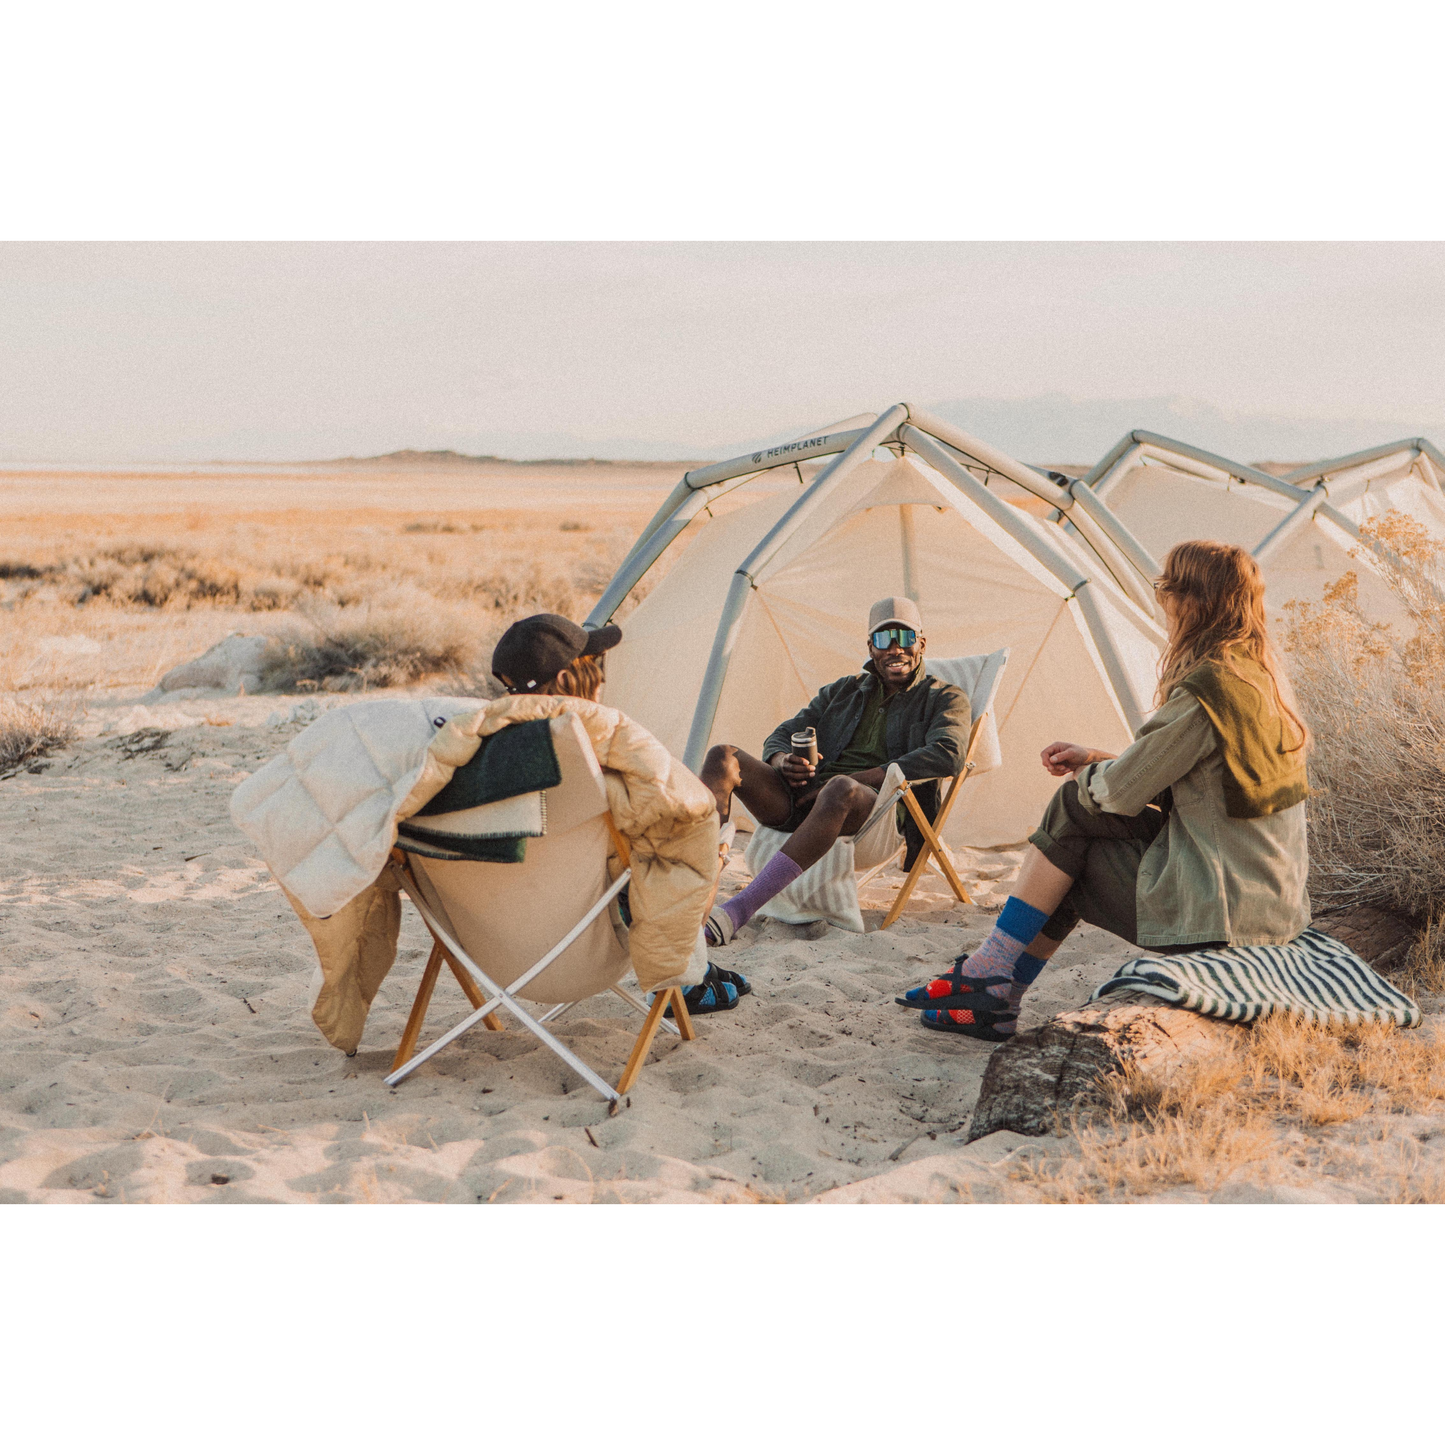 HEIMPLANET Tent Backdoor 3 Season Tent , Sand